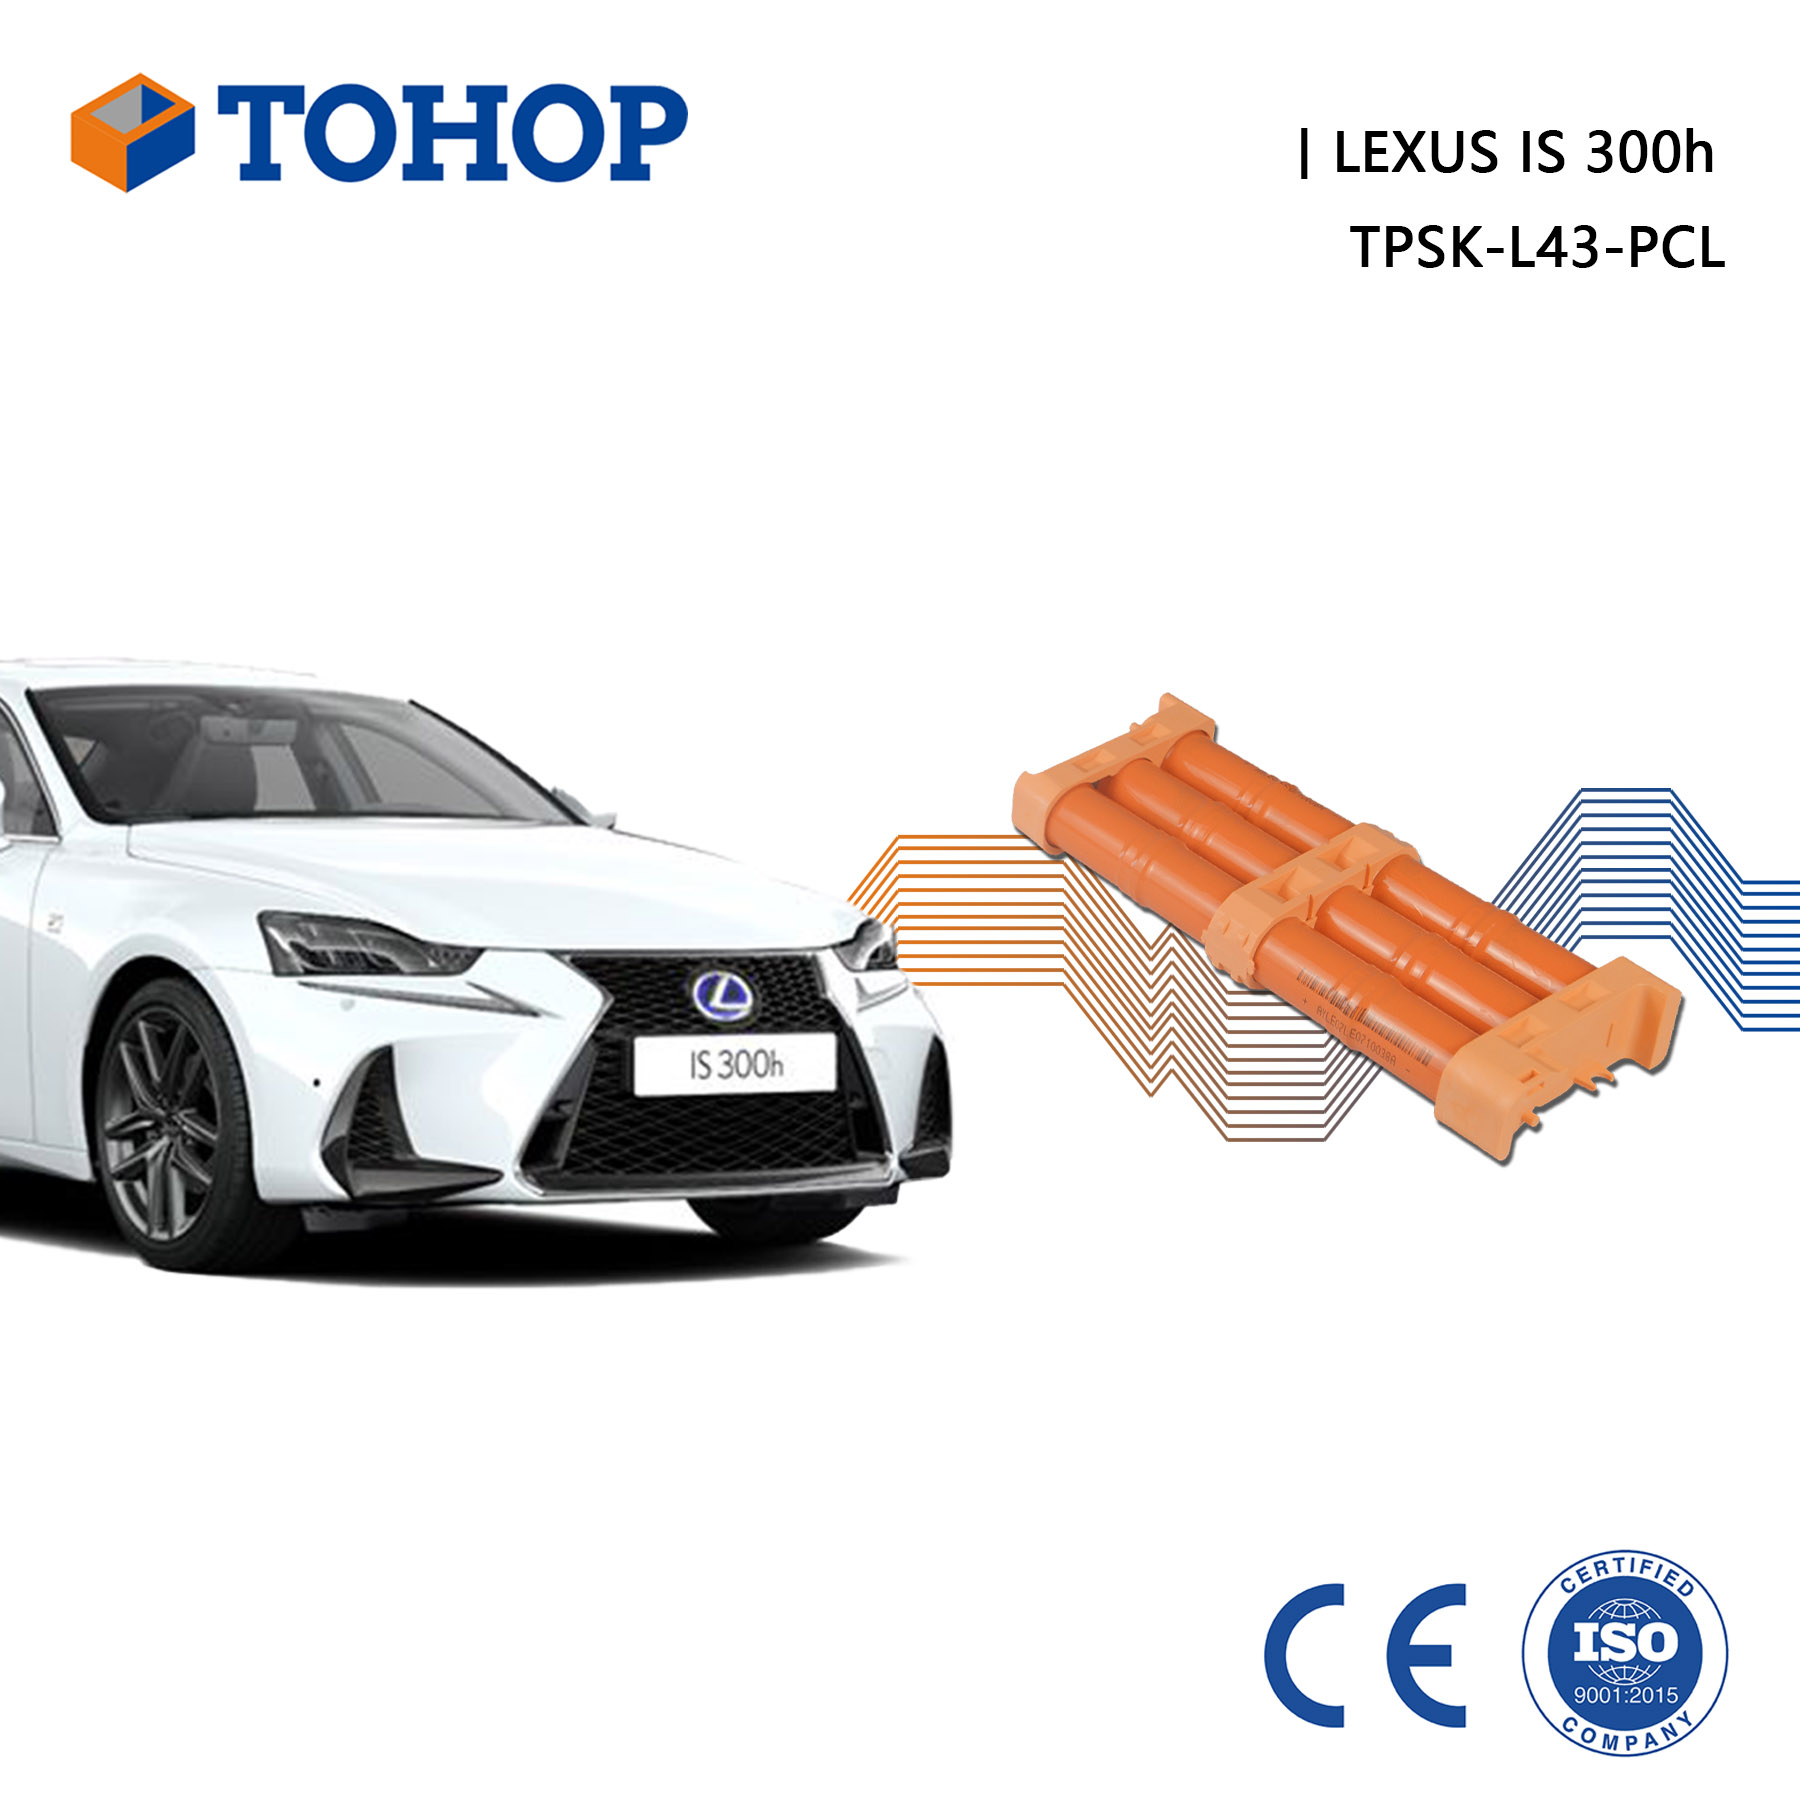 IS300h tout nouveau pack de batterie hybride de remplacement 6.5Ah pour Lexus